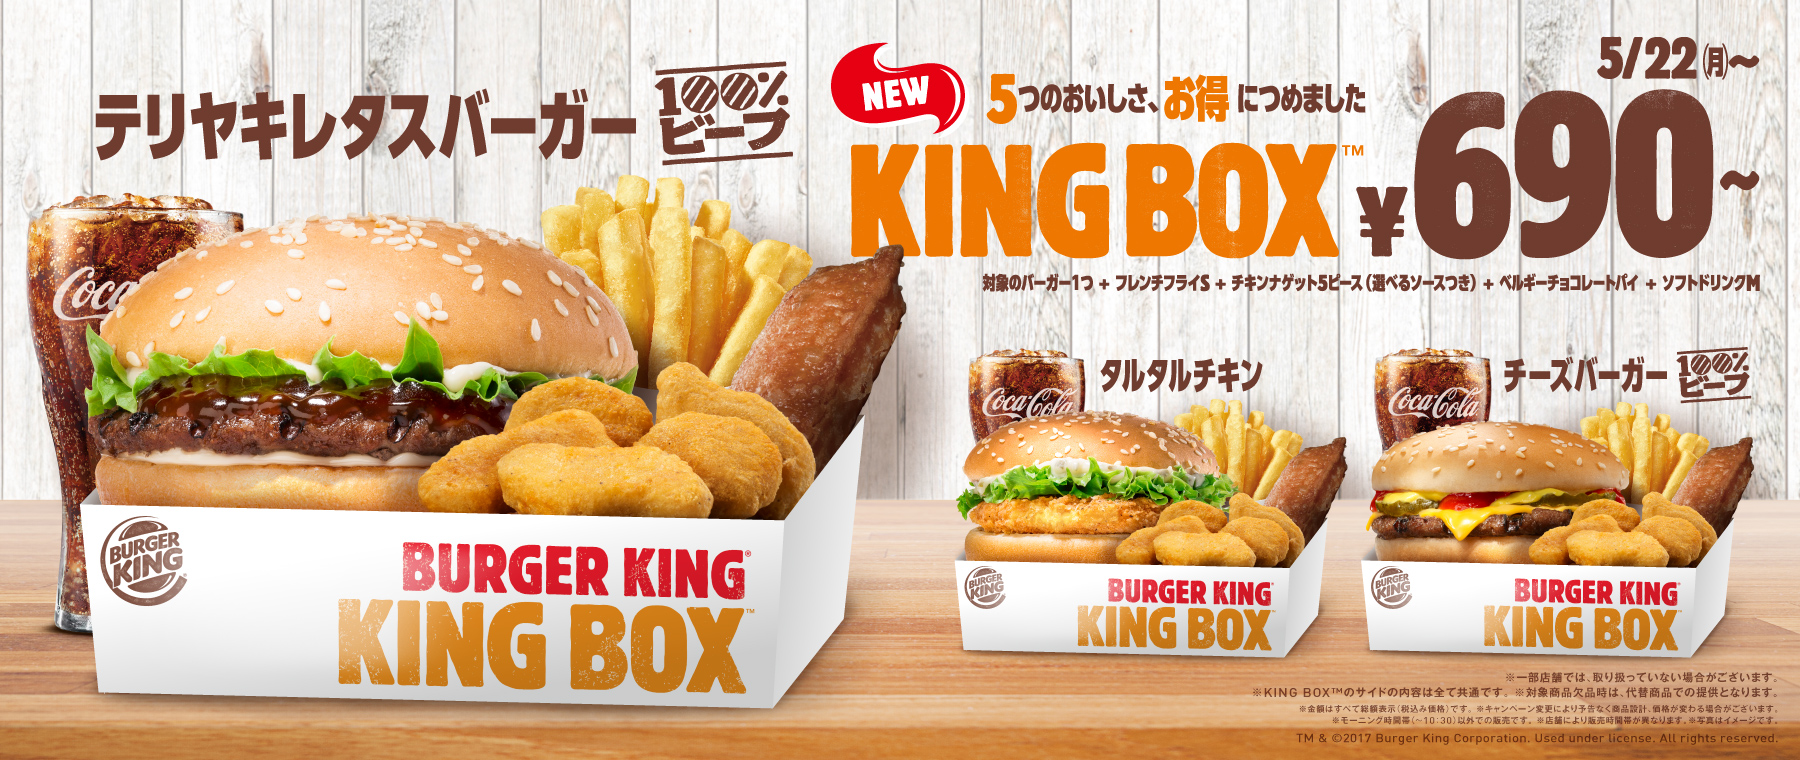 【話題】「バーガーキング」のお得なKING BOXが美味しそう！バーガー含む5点が690円で話題に！ | まとめまとめ